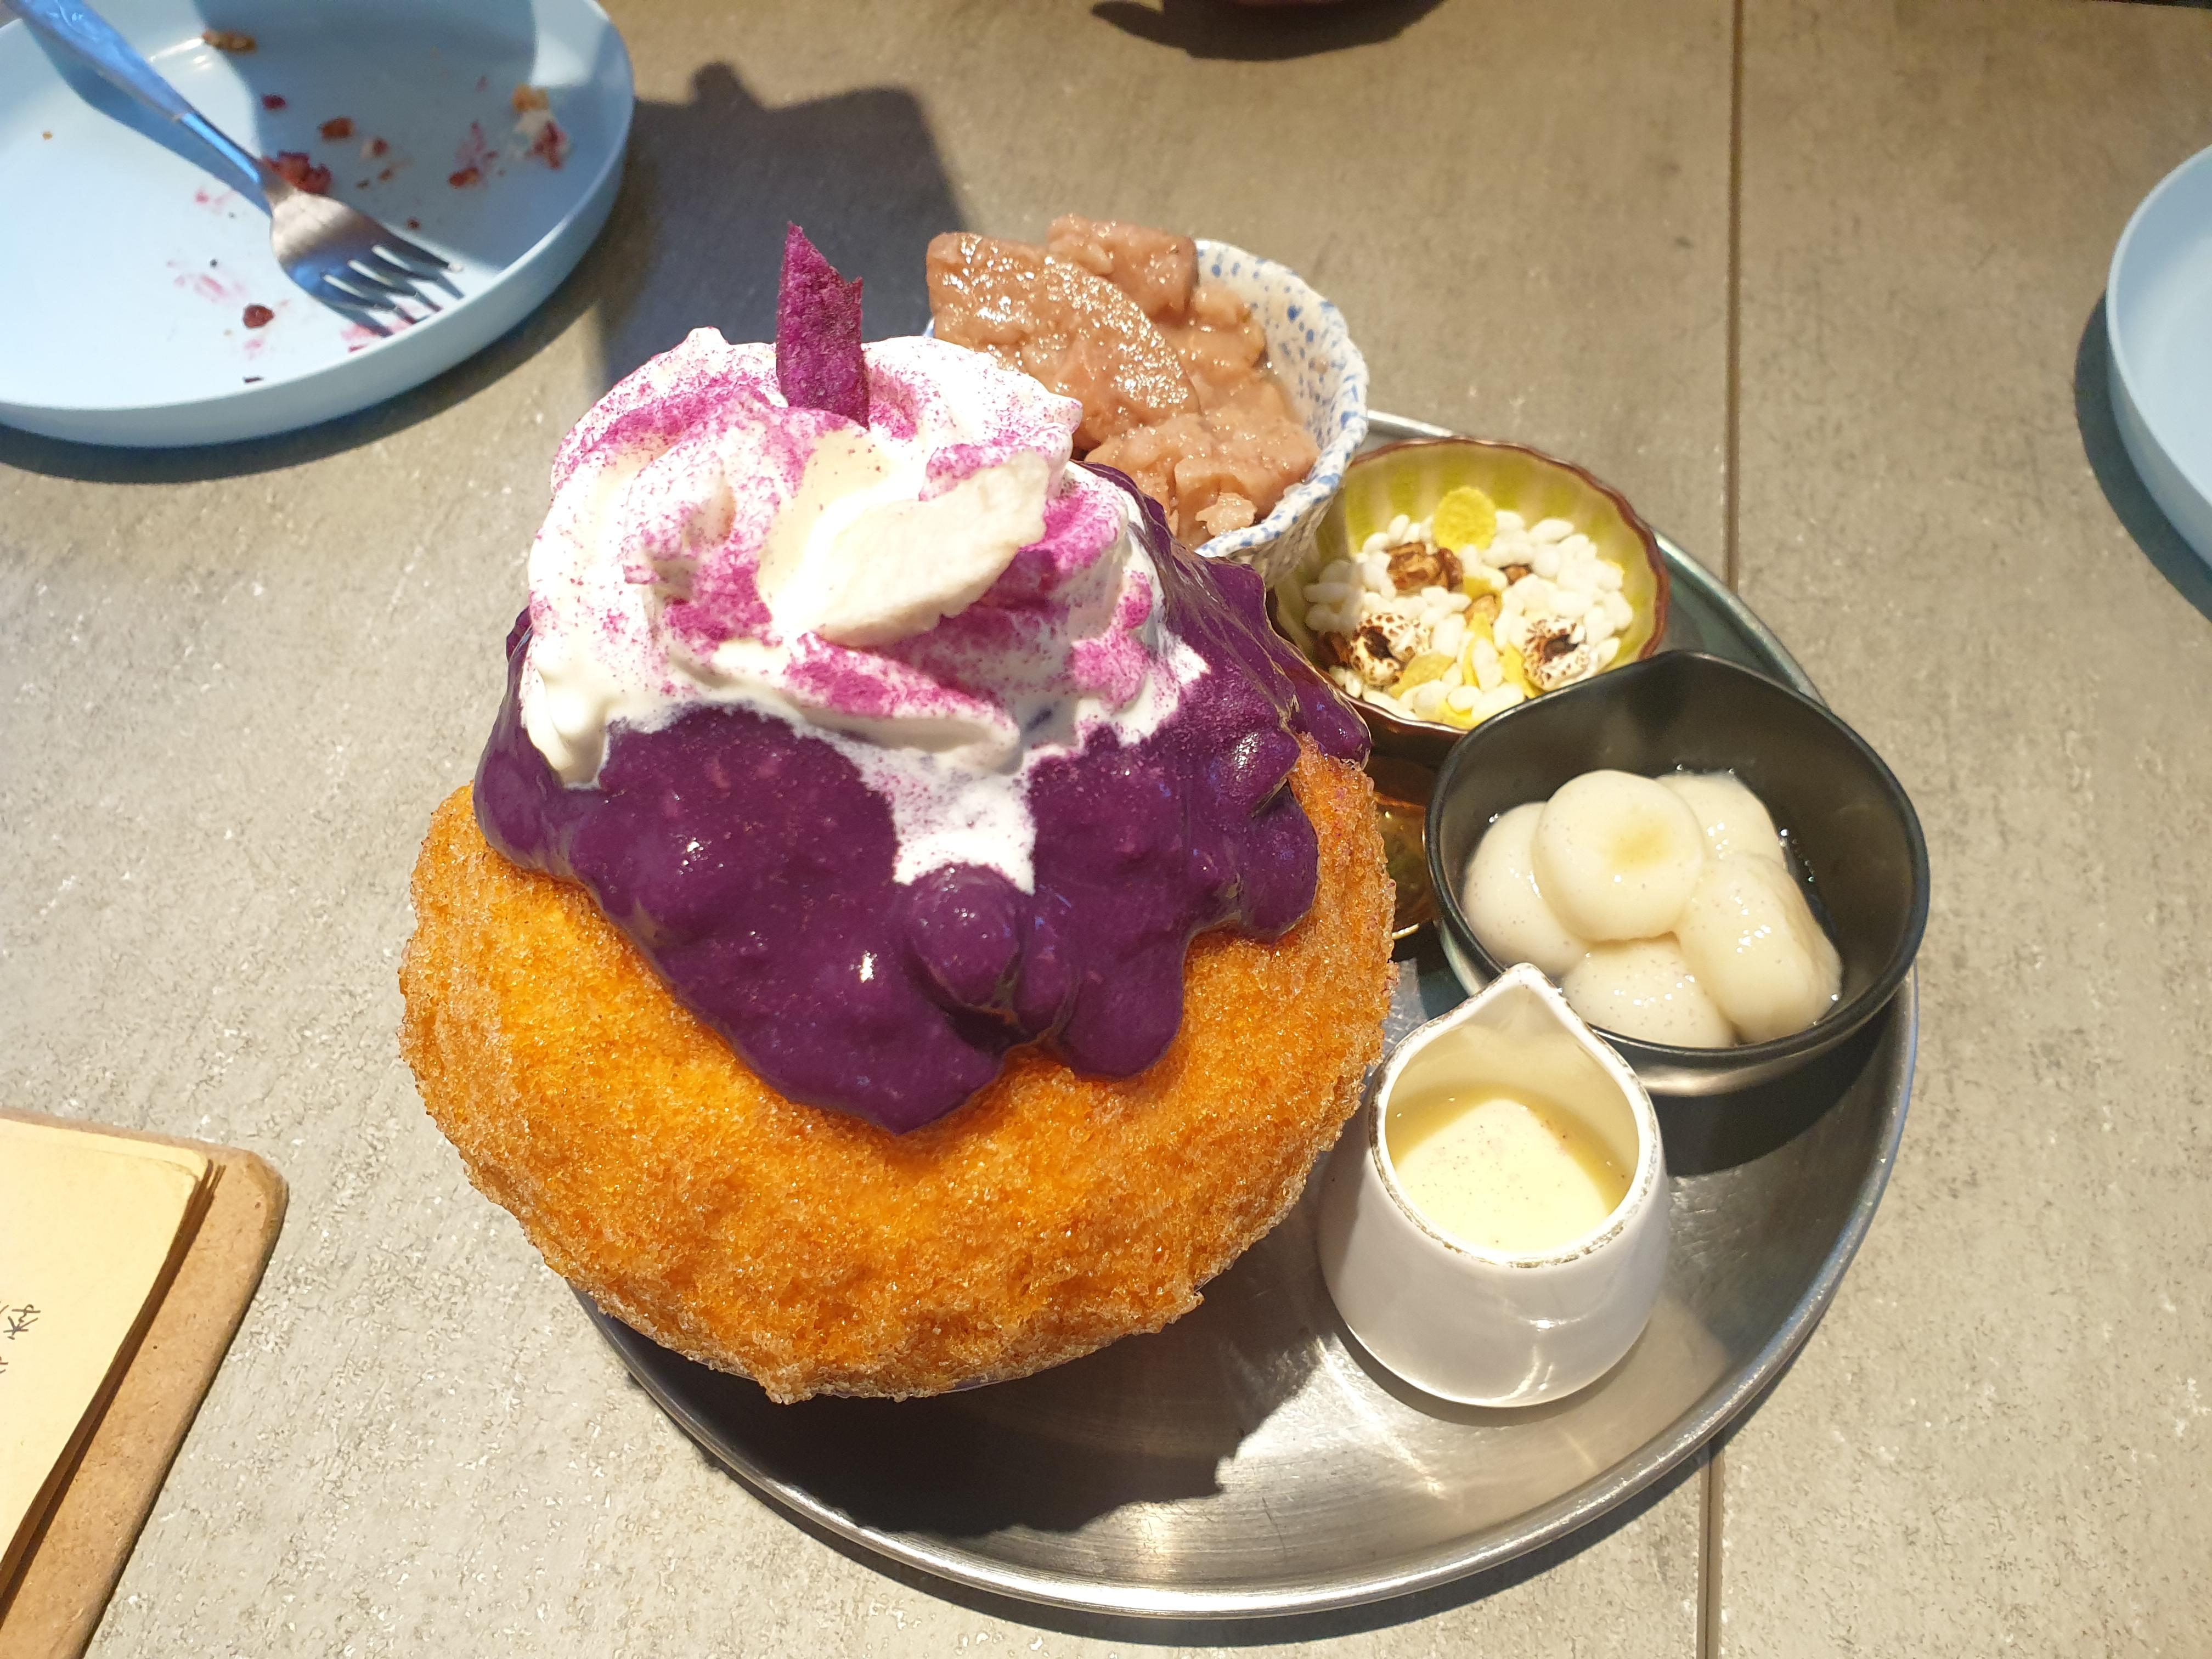 這道紫薯芋你以泰國手標紅茶的冰為基底，搭配手工白玉、布蕾乳酪、糖蜜芋頭、紫地瓜芋泥等等..